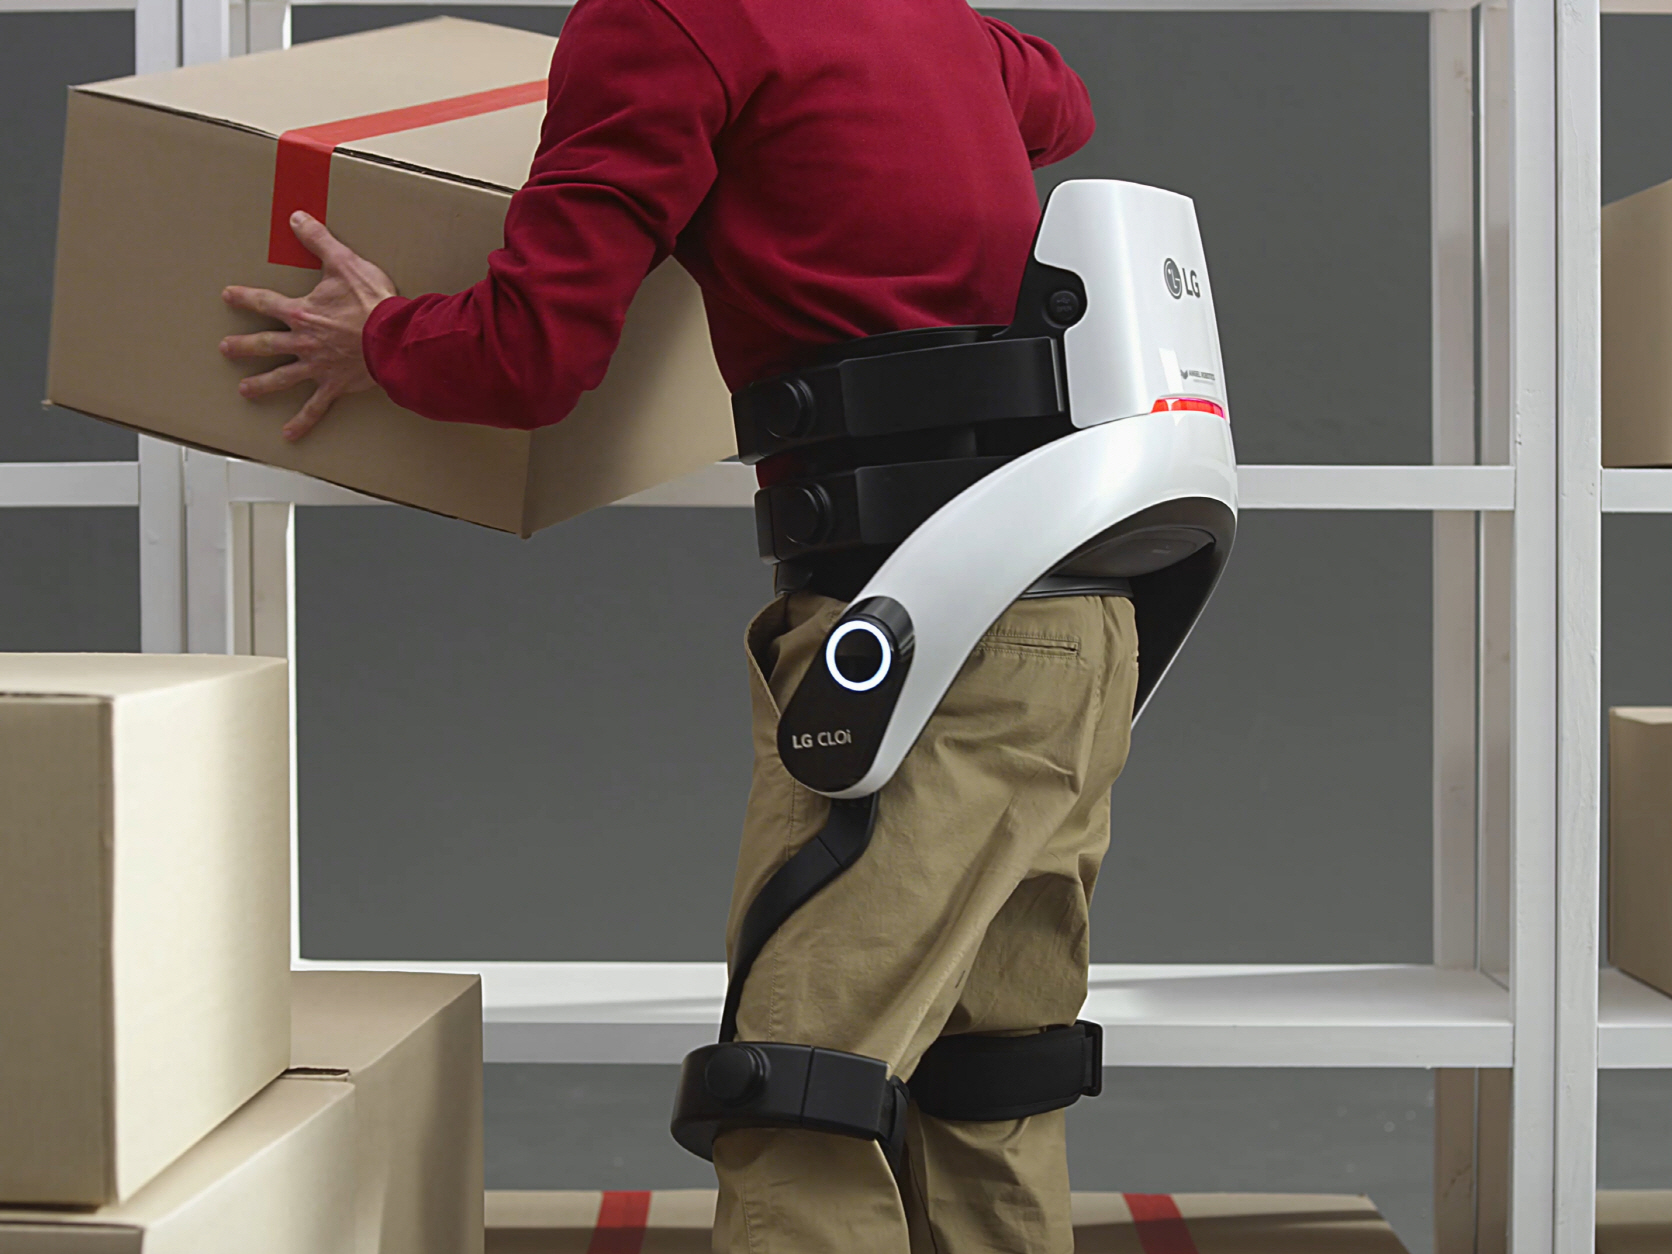 산업현장이나 상업, 물류공간에서 사용자의 허리근력을 보조하는 'LG 클로이 수트봇(CLOi SuitBot)'